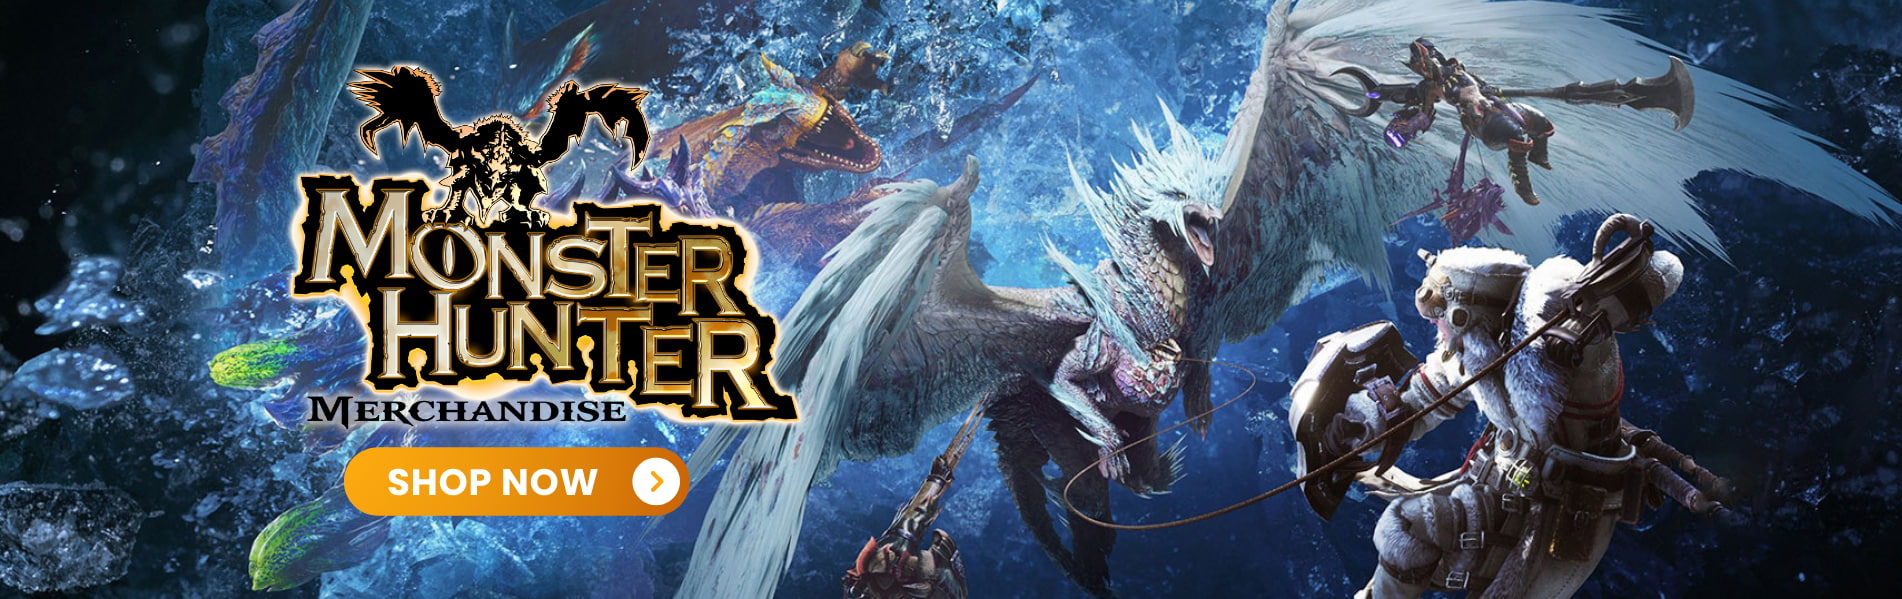 Monster Hunter Merchandise Banner